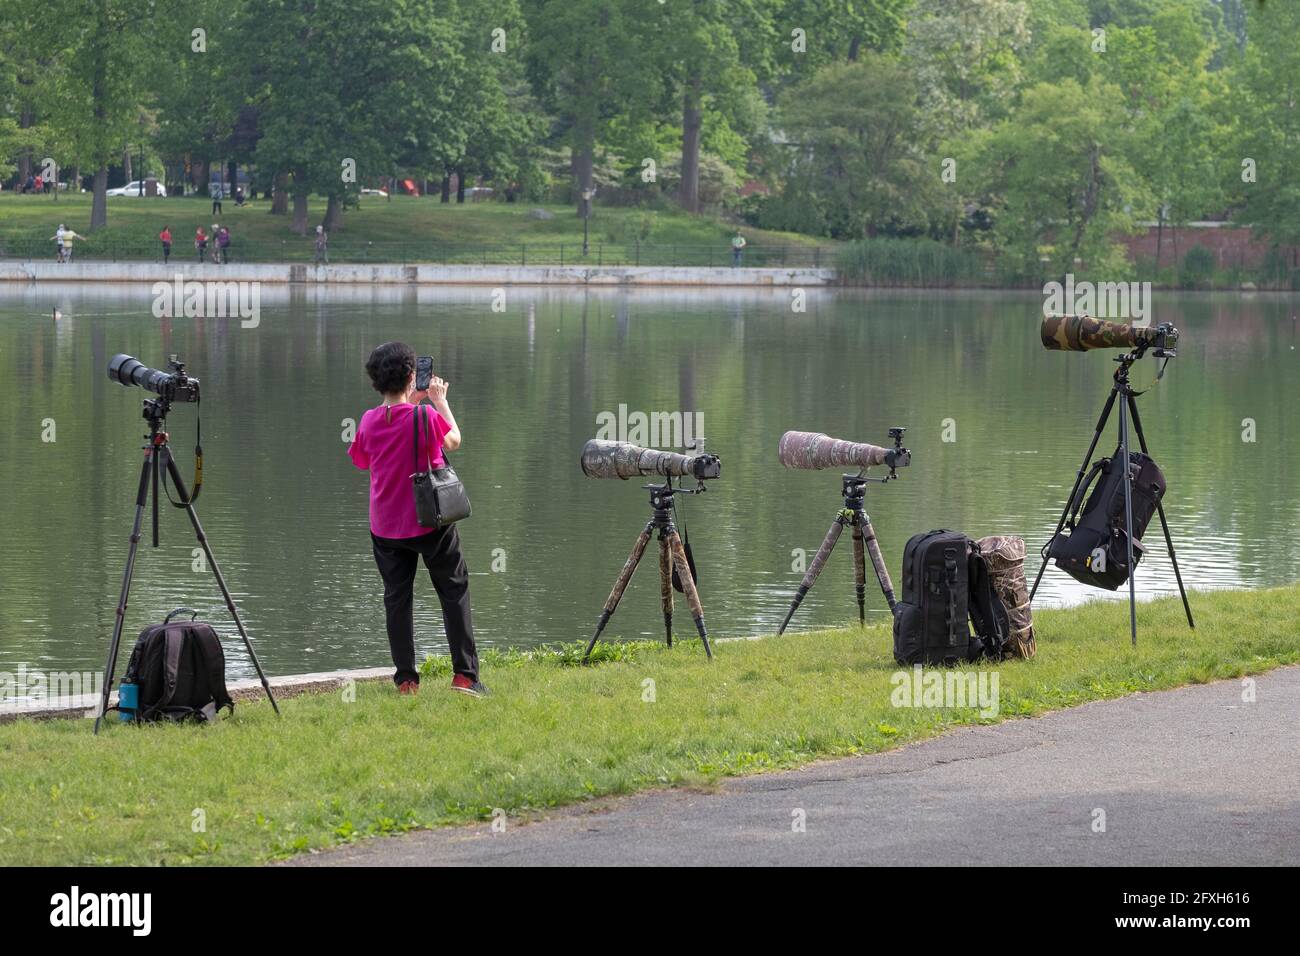 Inmitten von 4 teuren Kameras und Teleobjektiven macht eine asiatisch-amerikanische Frau mit ihrem Handy ein Foto. Stockfoto